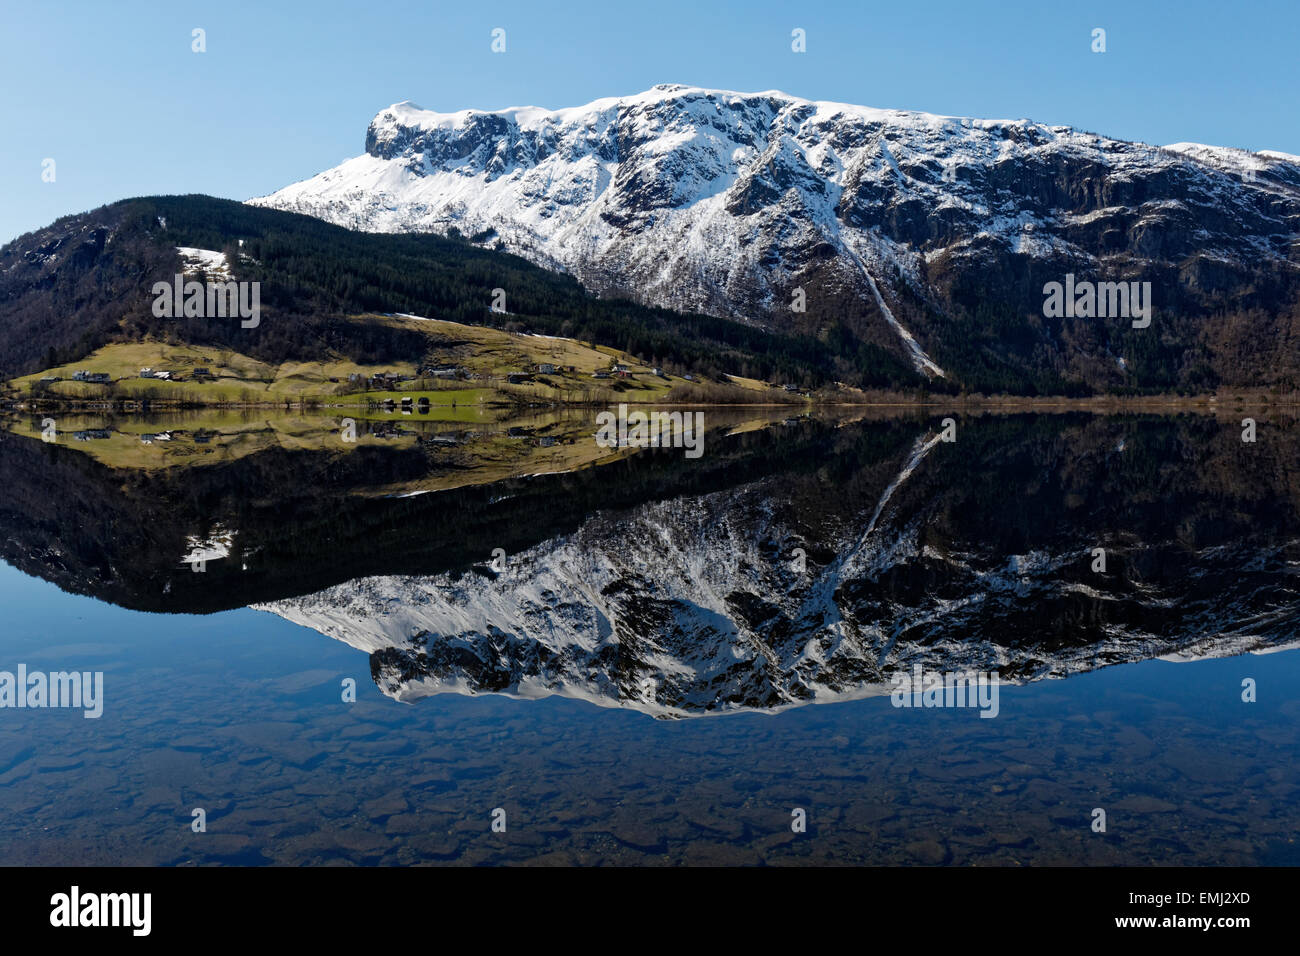 Reflet de la montagne rencontre la mer à Granvinsvatnet, dans la région de Hardanger en Norvège. Banque D'Images